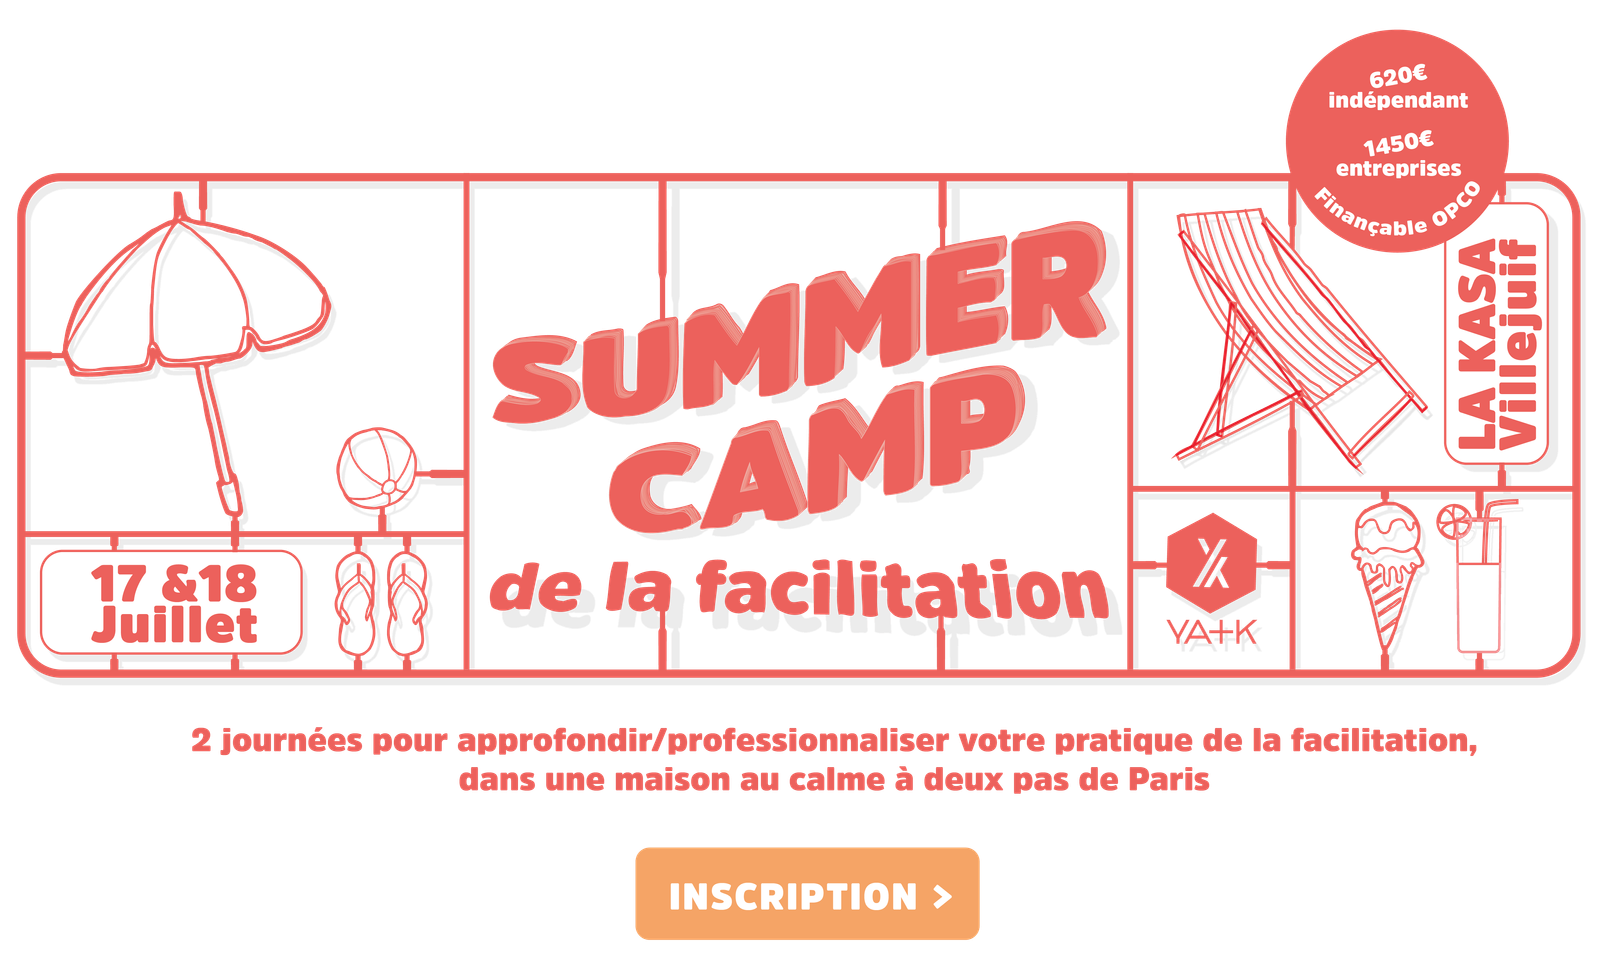 formation approfondissement facilitation summer camp événement